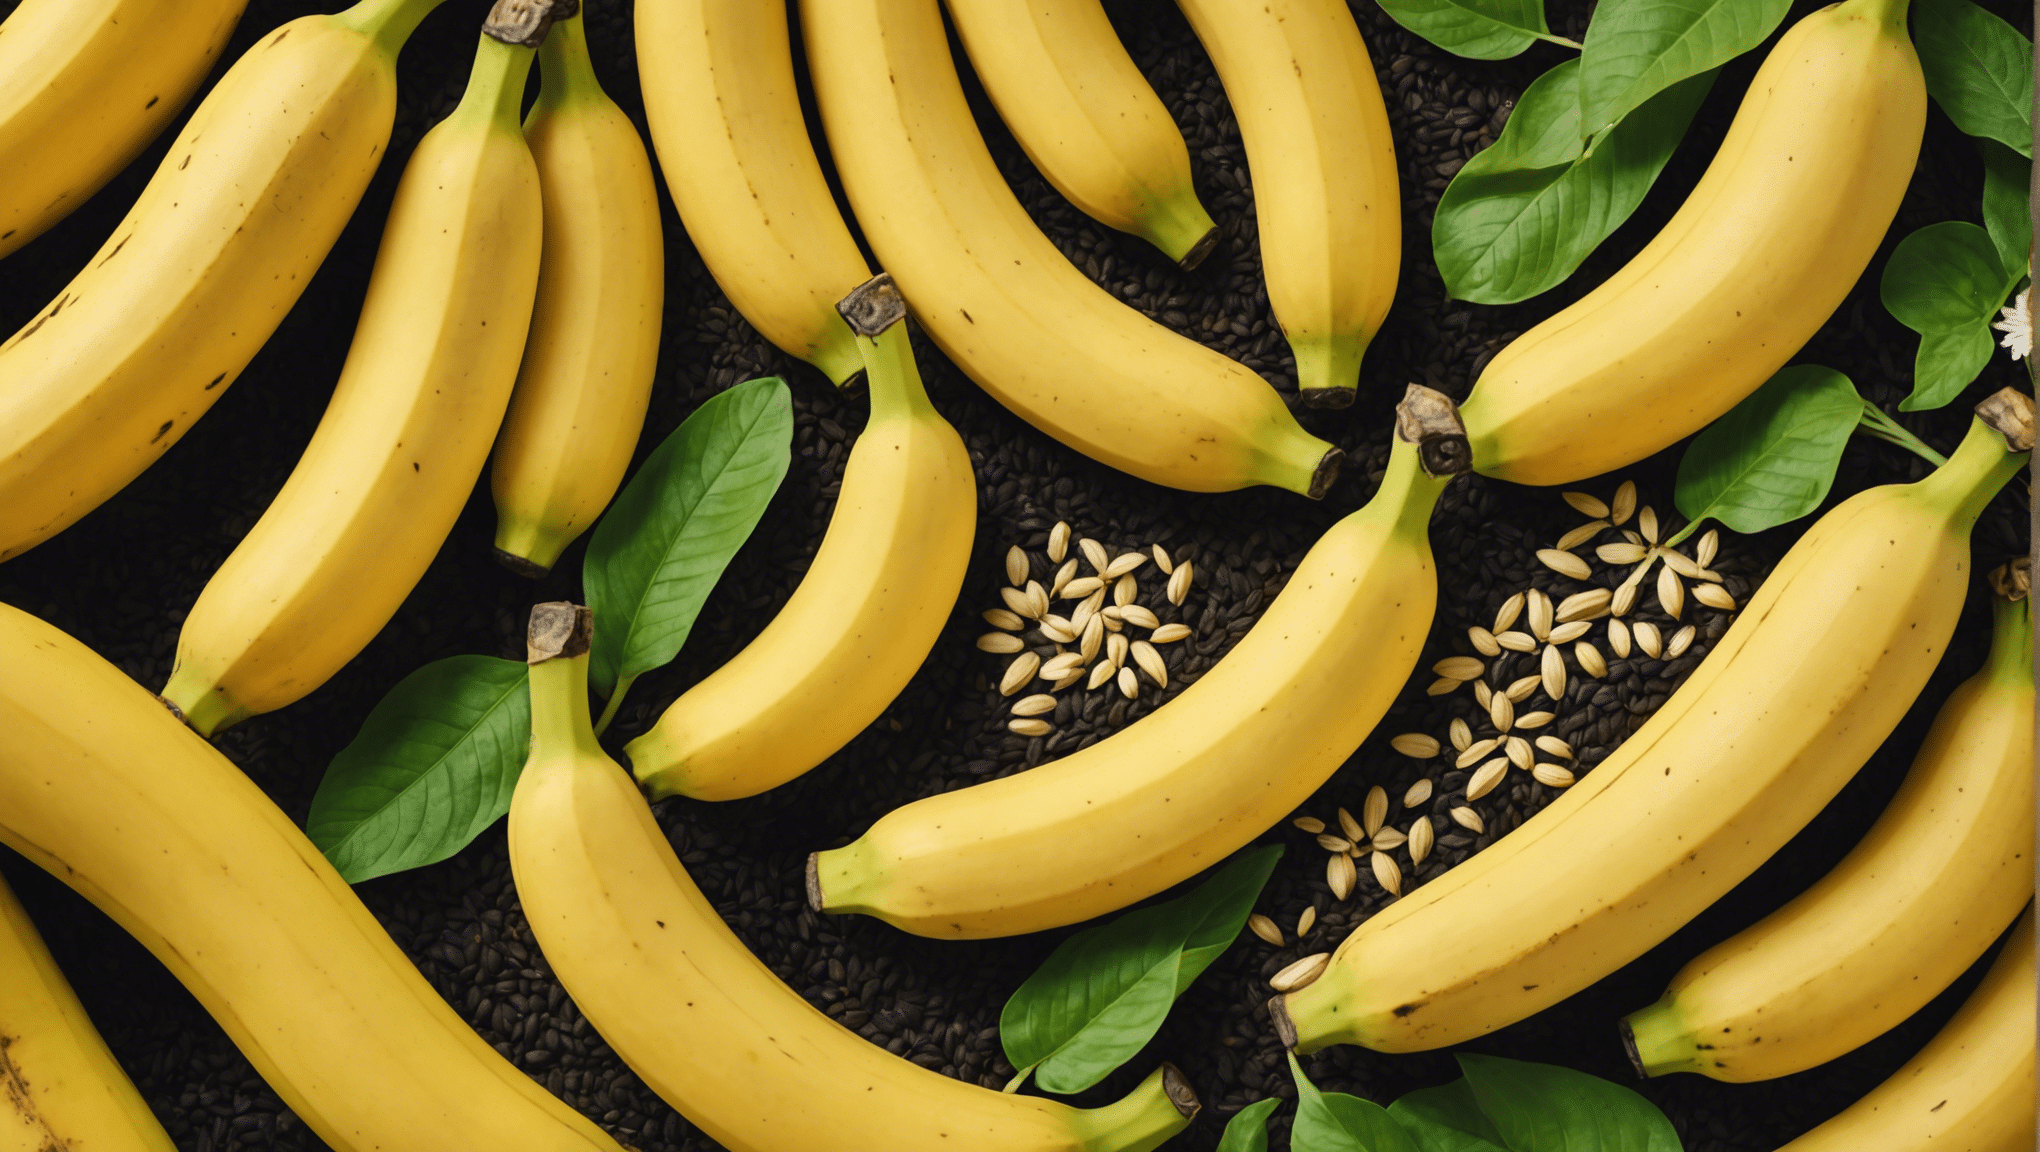 z našim izčrpnim vodnikom odkrijte, ali je varno jesti banane s semeni. pozanimajte se o možnih tveganjih in koristih uživanja banan s semeni.